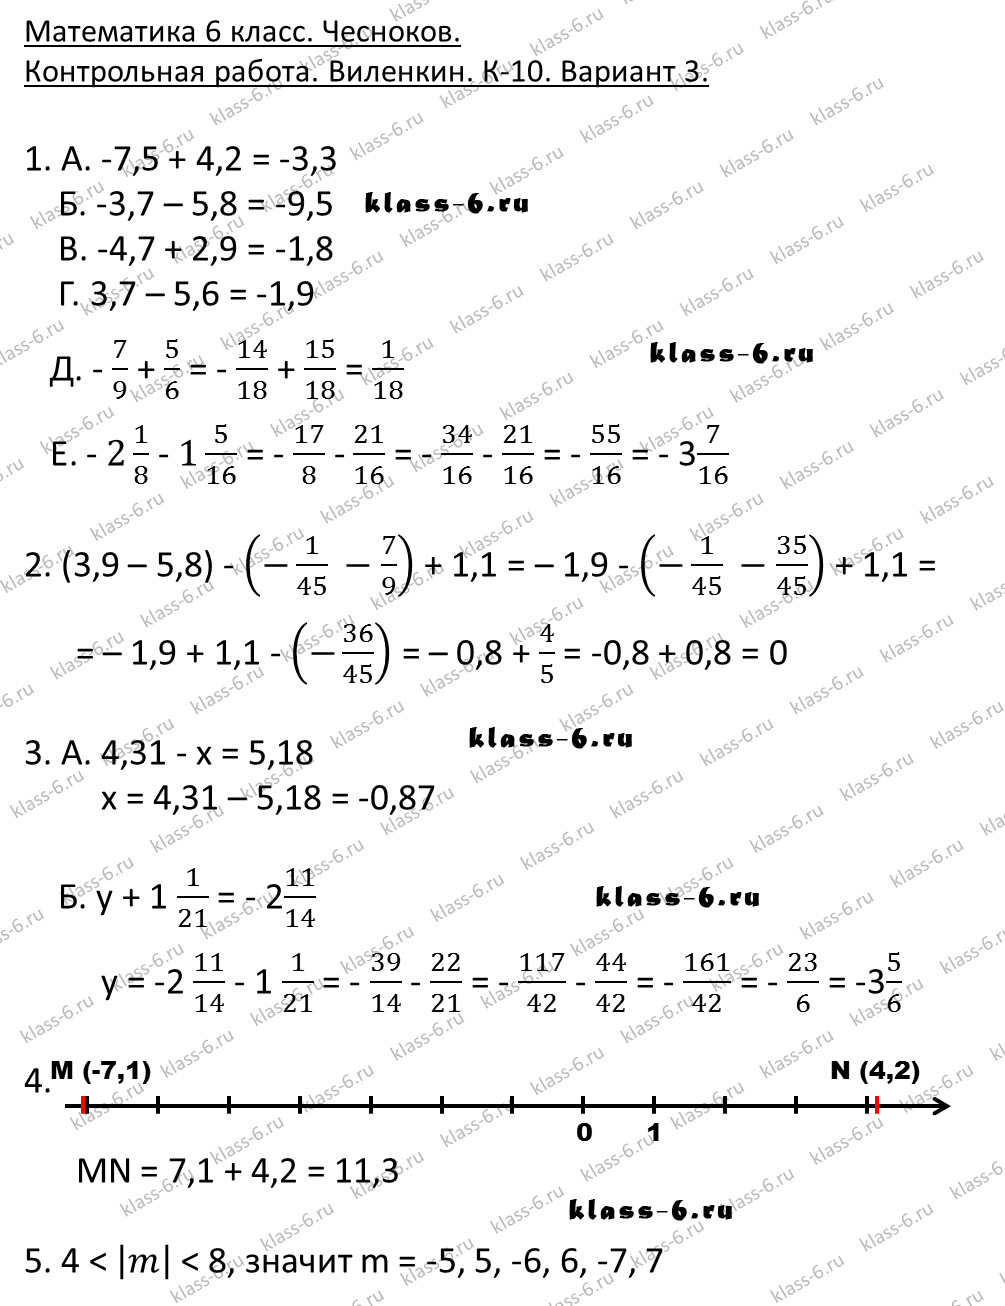 гдз математика Чесноков дидактические материалы 6 класс ответ и подробное решение с объяснениями контрольной работы Виленкин задание 10 вариант 3